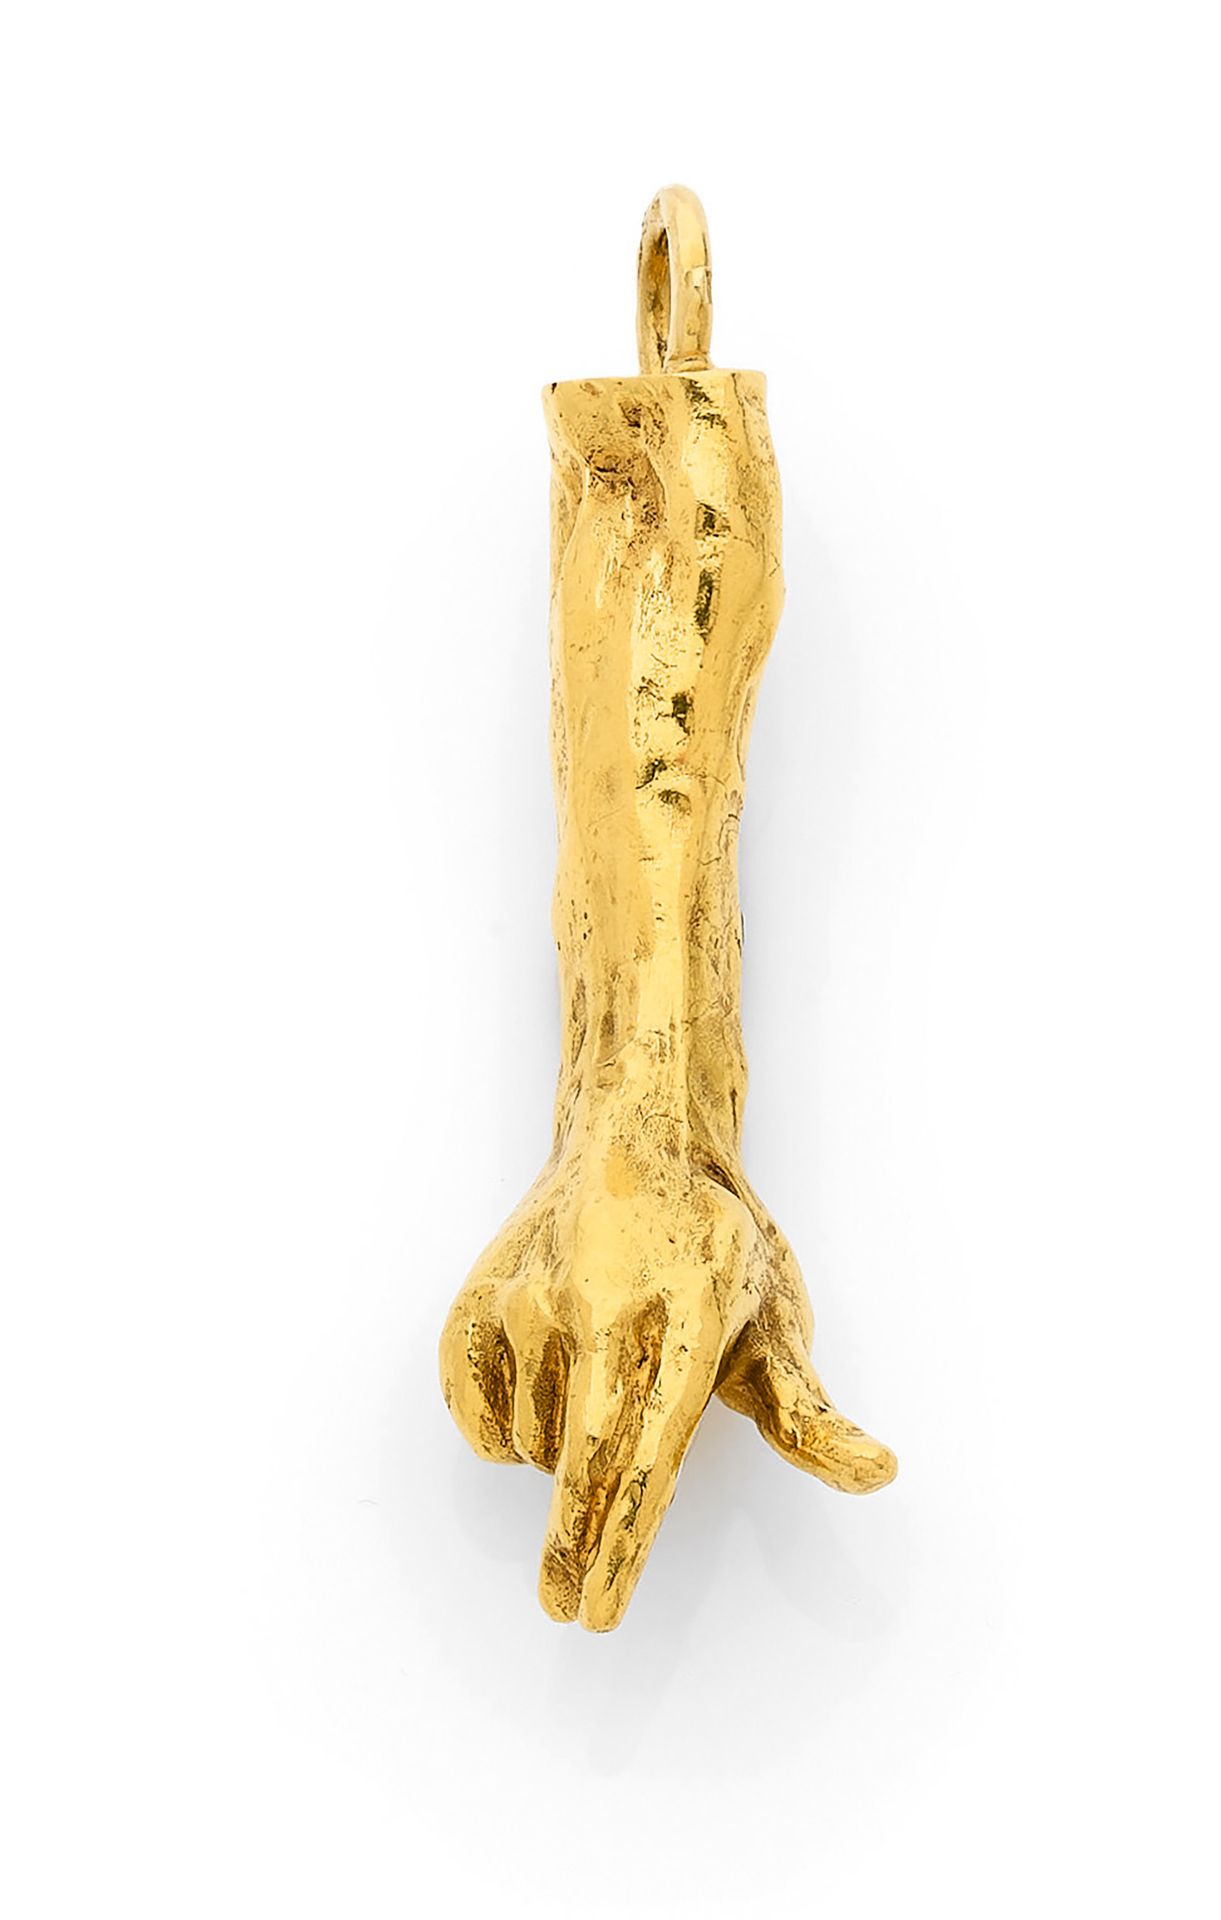 D'après RODIN nach RODIN
Skulpturanhänger aus 18 Karat (750) Gold, der eine Hand&hellip;